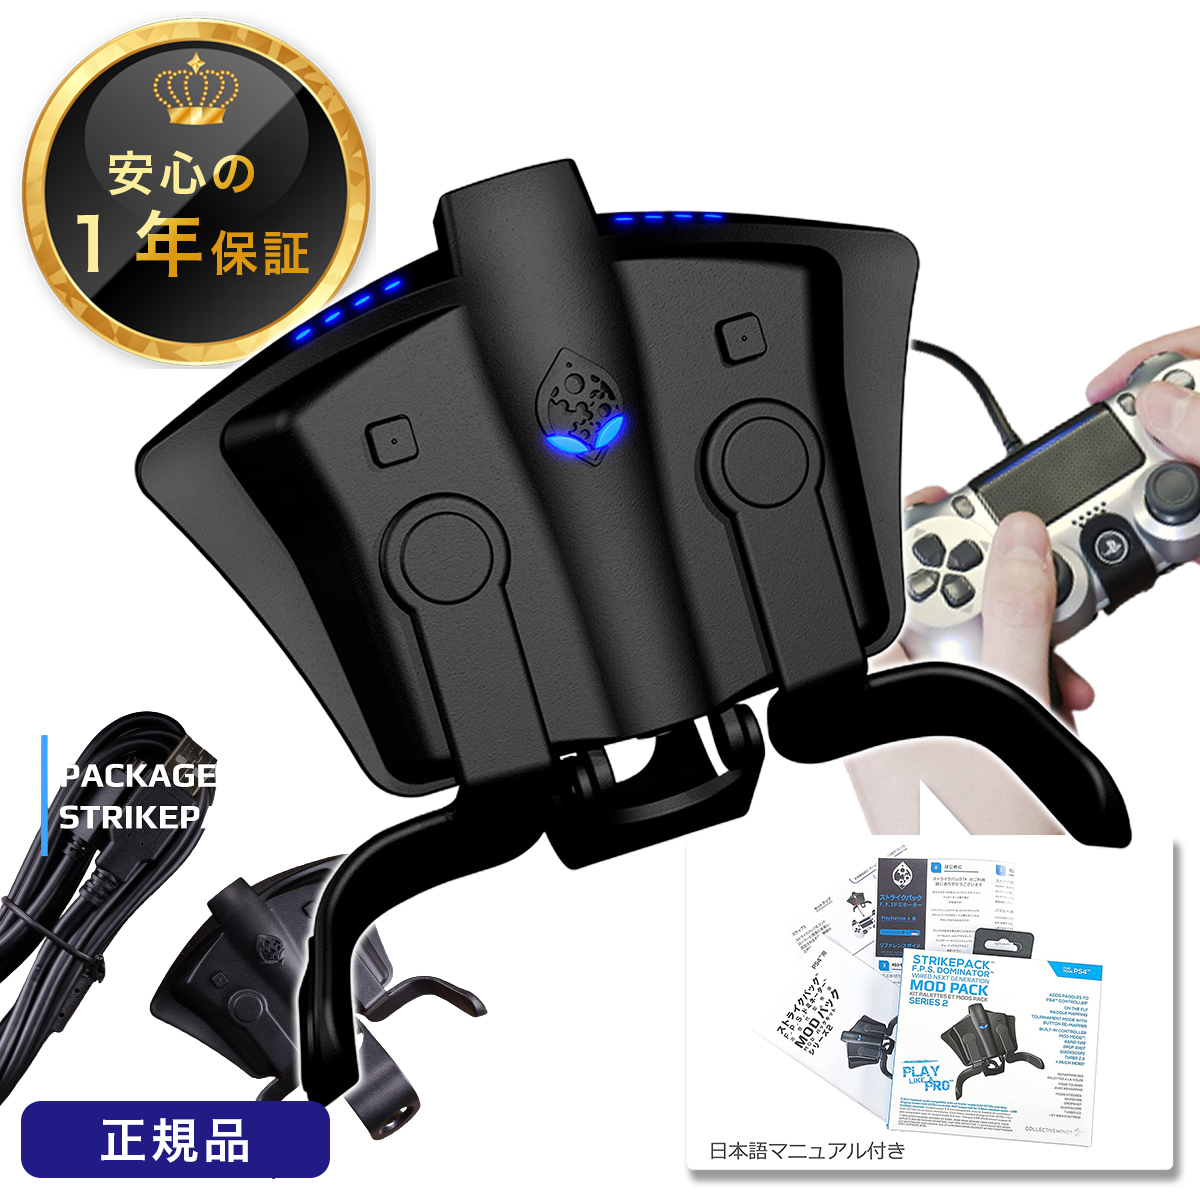 安心の正規品 １年保証付き 『1年保証』 正規品 日本語マニュアル付き CronusMax PS4 Stirke ランキングTOP10 ストライクパック リコイル制御 連射 Dominator 背面パドル Pack 背面アダプター